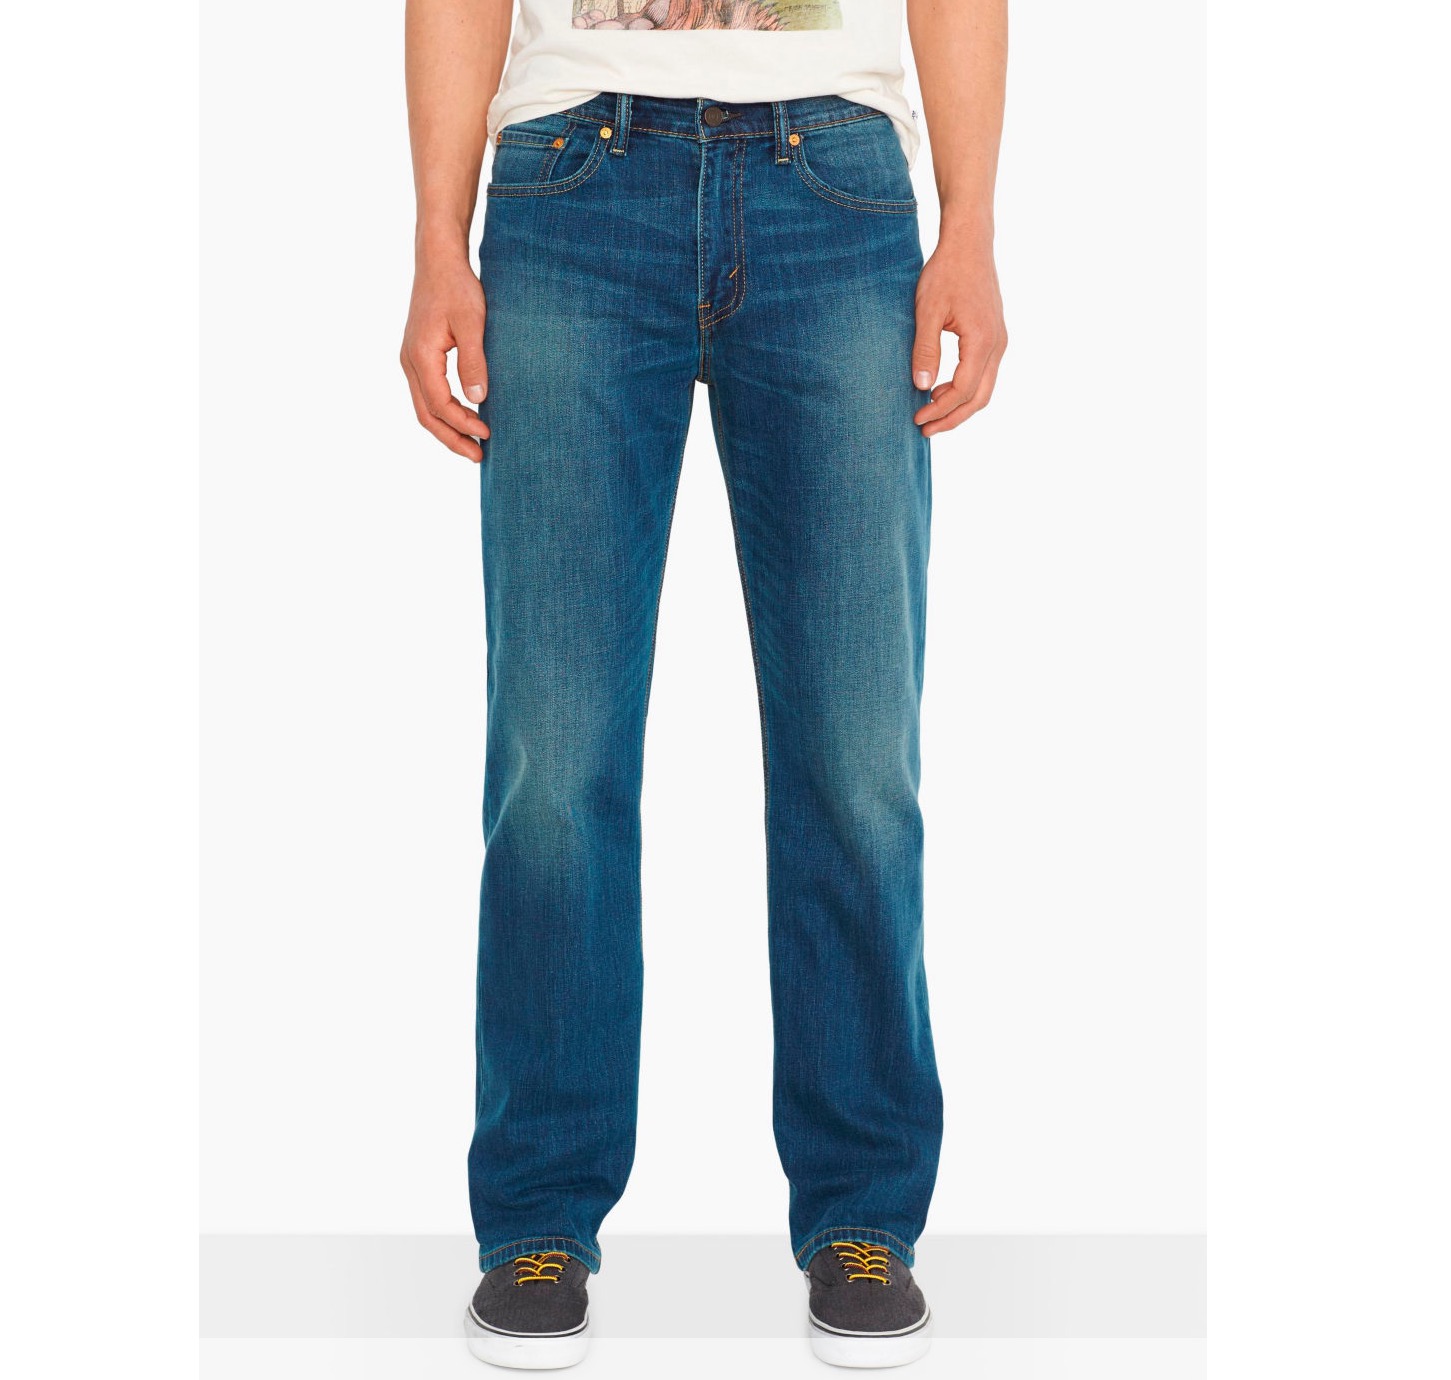 Levi’s Regular-Fit Jeans 751 Schwarz oder Blau nur 24,99 Euro inkl. Versand